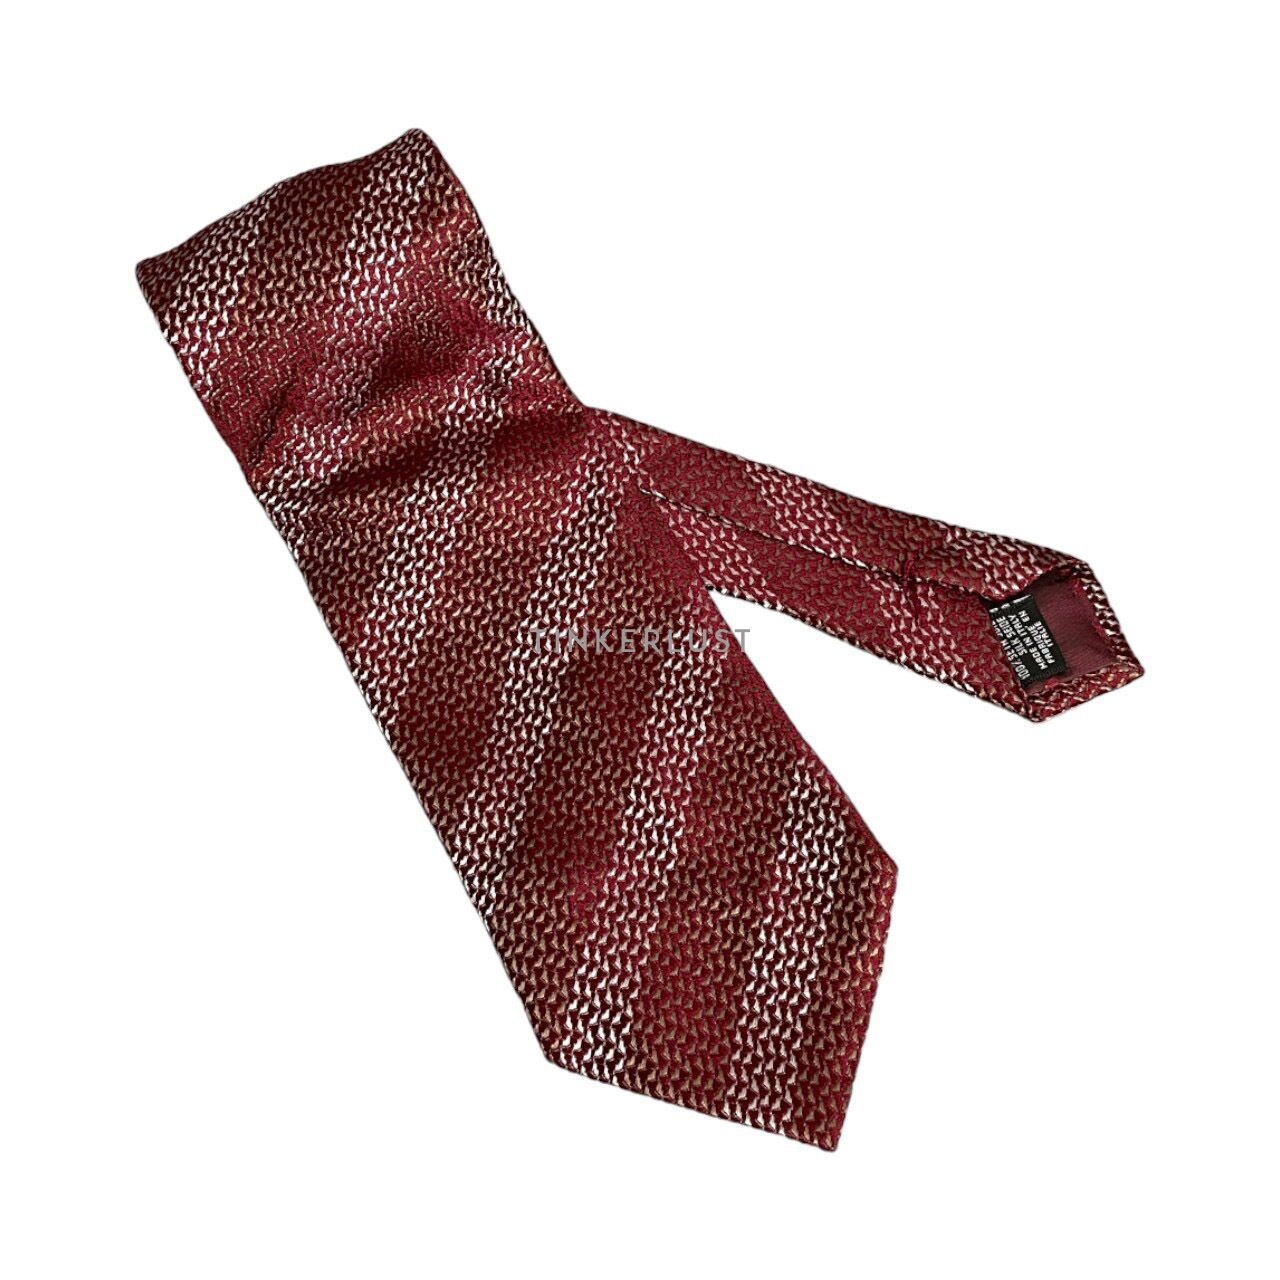 Giorgio Armani Red Patterned Tie